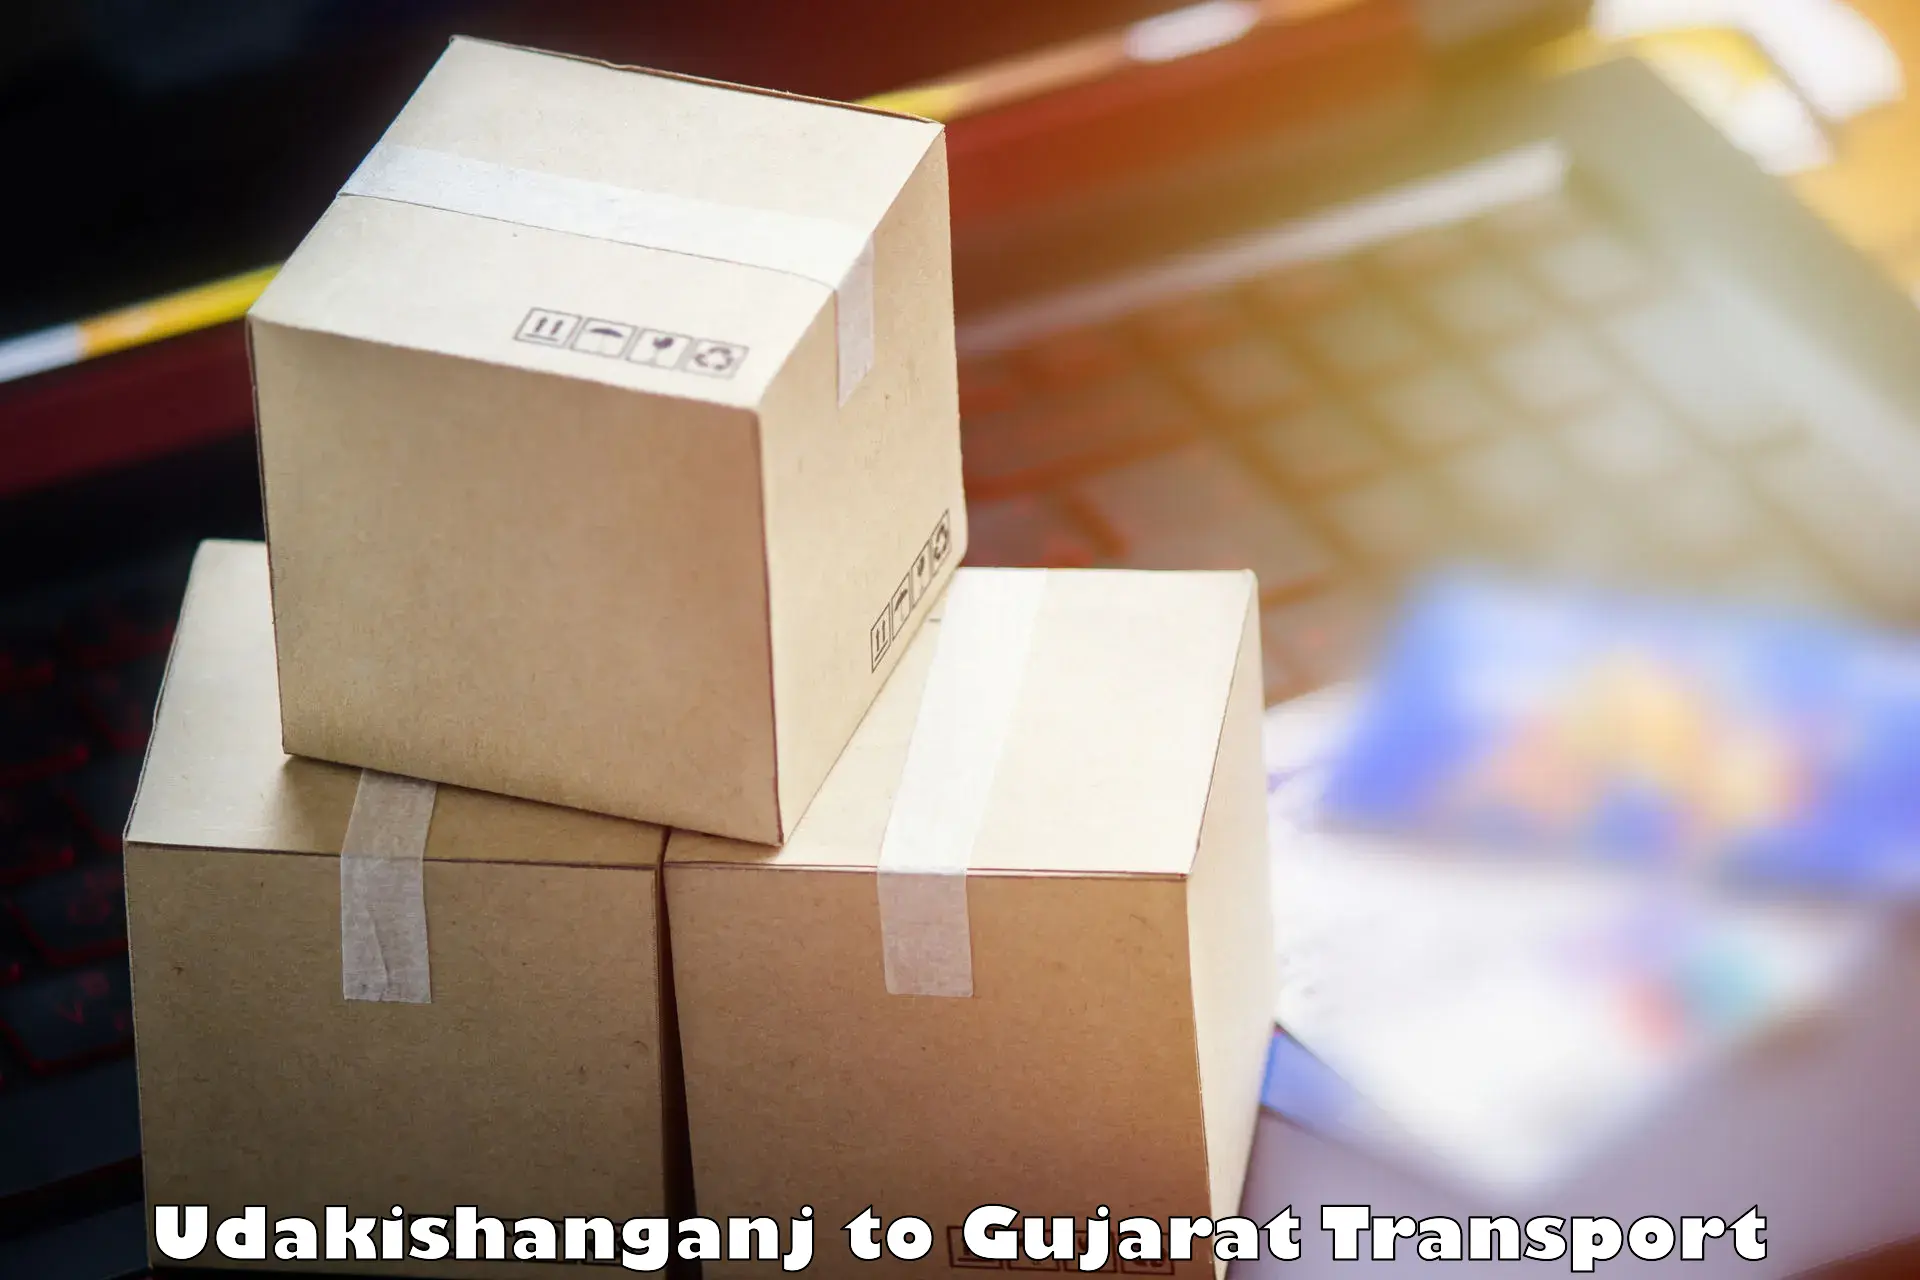 Delivery service Udakishanganj to Rajula